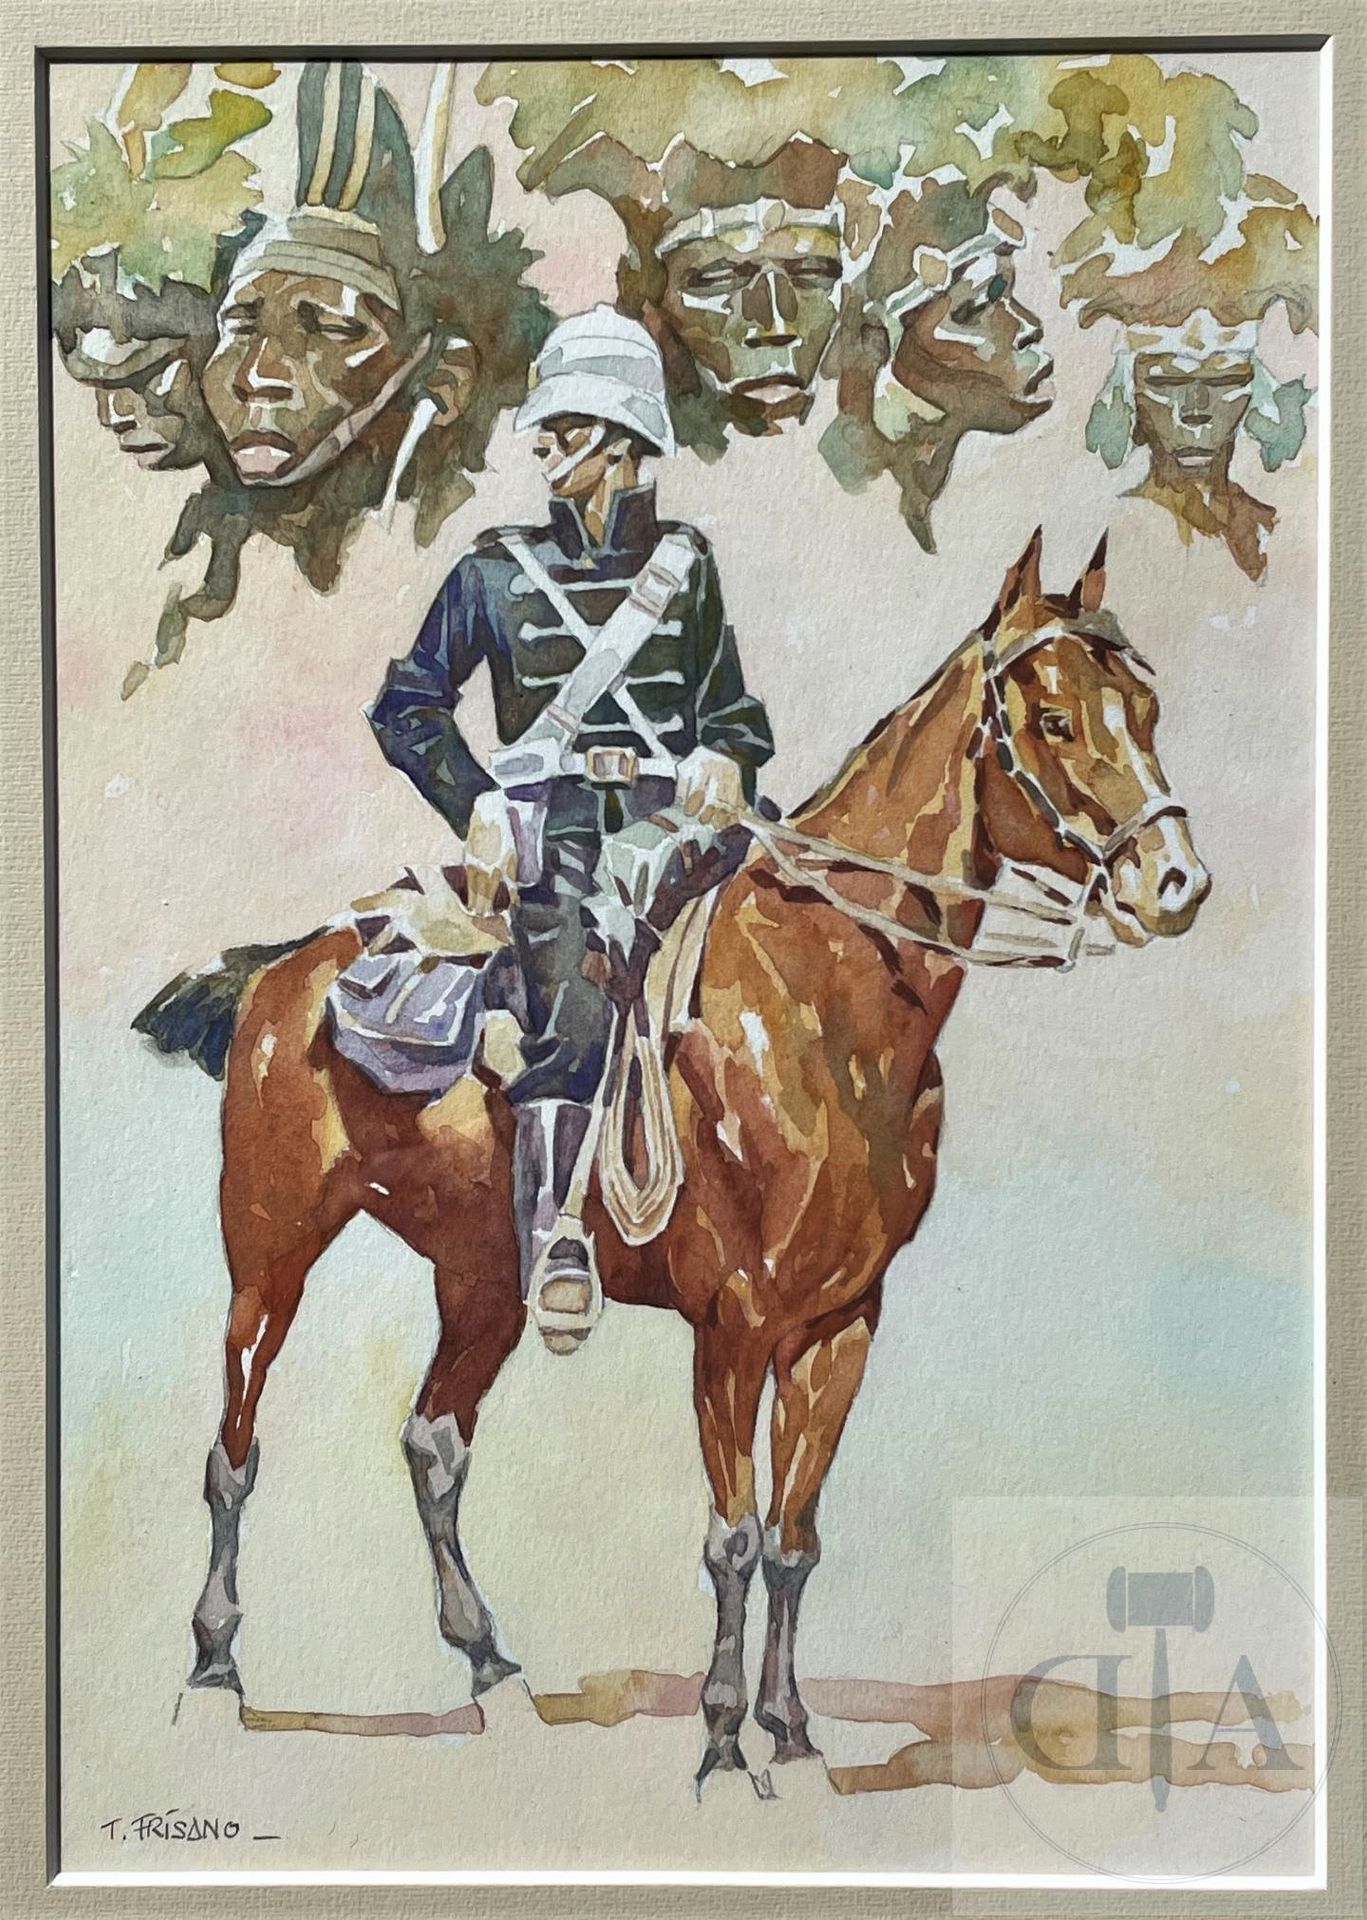 Null 弗里萨诺/向雨果-普拉特致敬。 原创图画，说明一个由非洲人物顶着的军事骑手，向 "丛林的安 "致敬。 印度墨水和水彩画。 这位非常有才华的艺术家的执行&hellip;